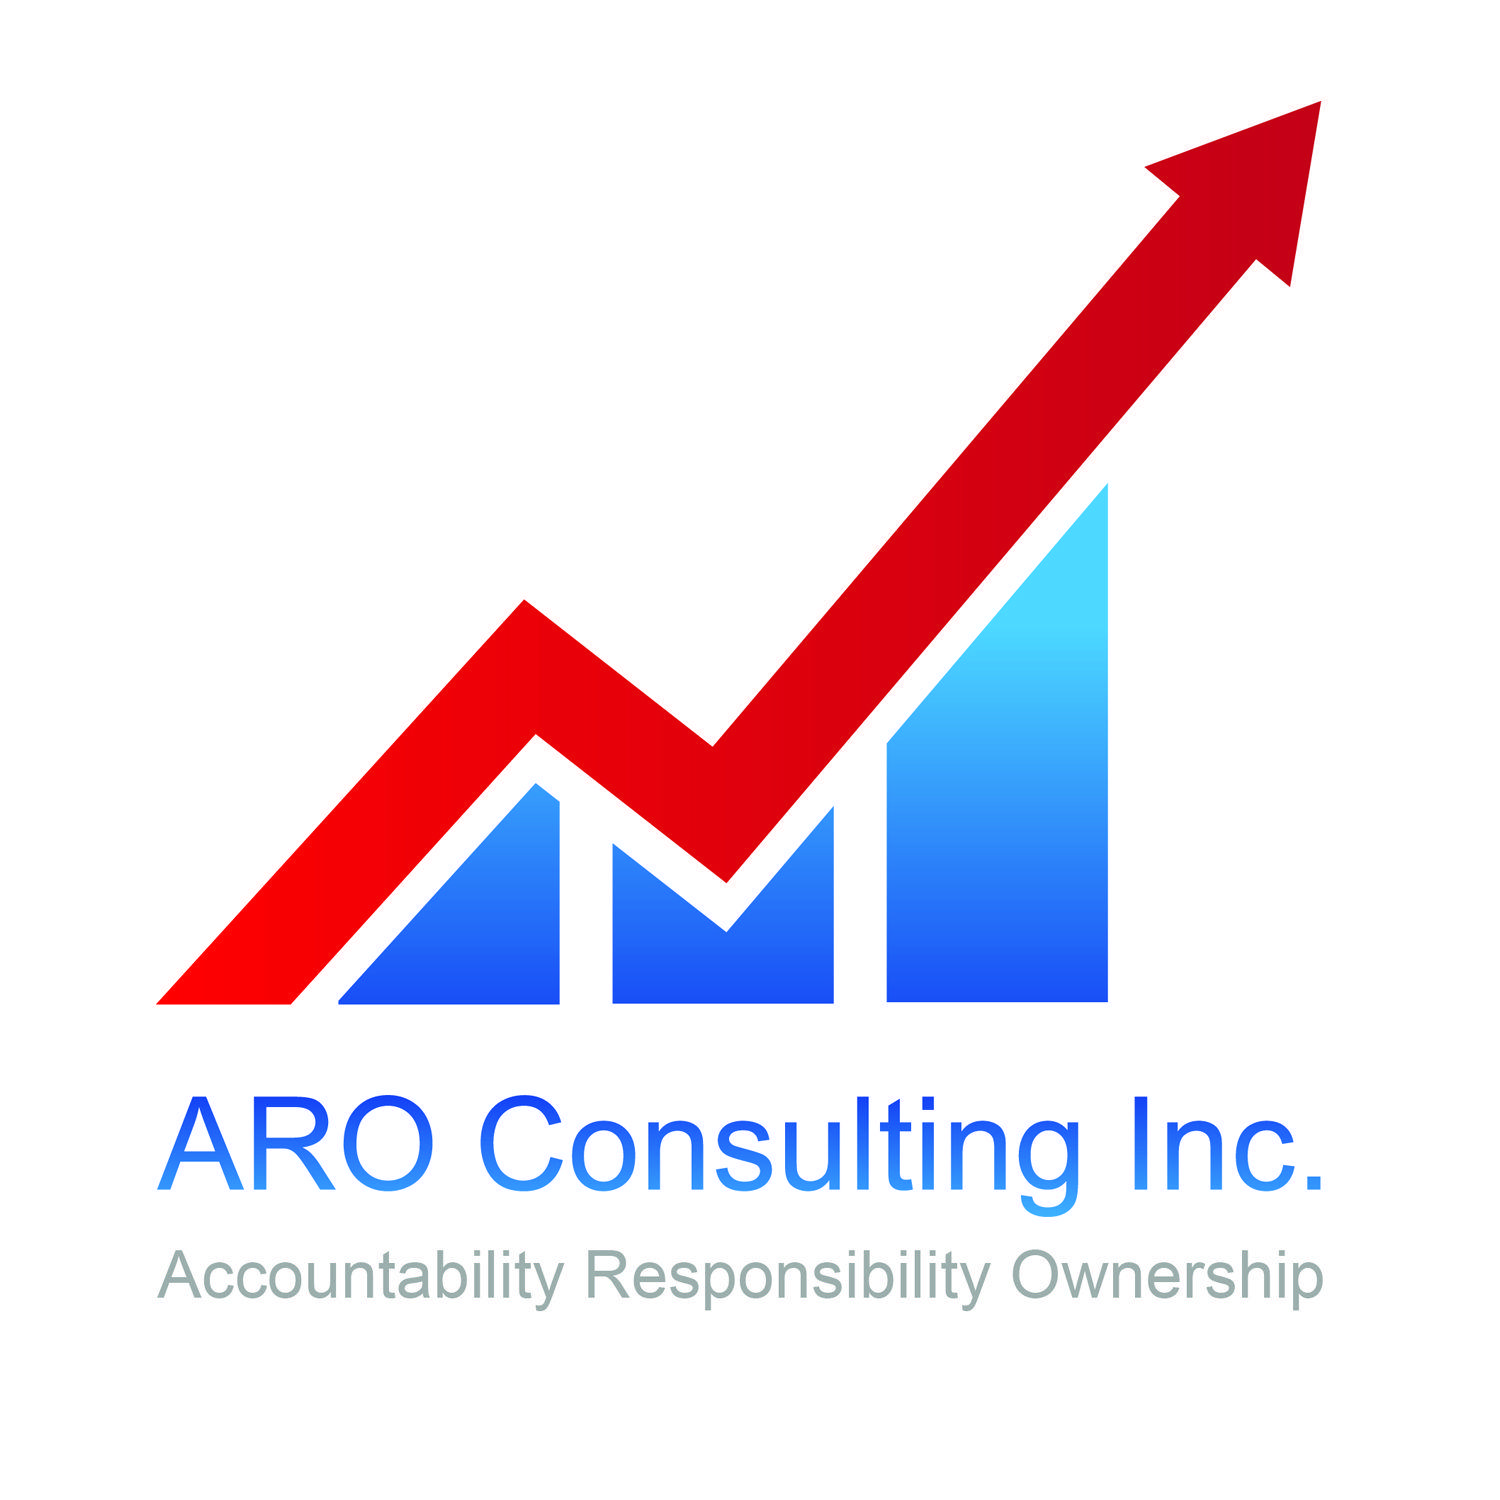 Aro Logo - Modern, Serious, Financial Service Logo Design for ARO Consulting